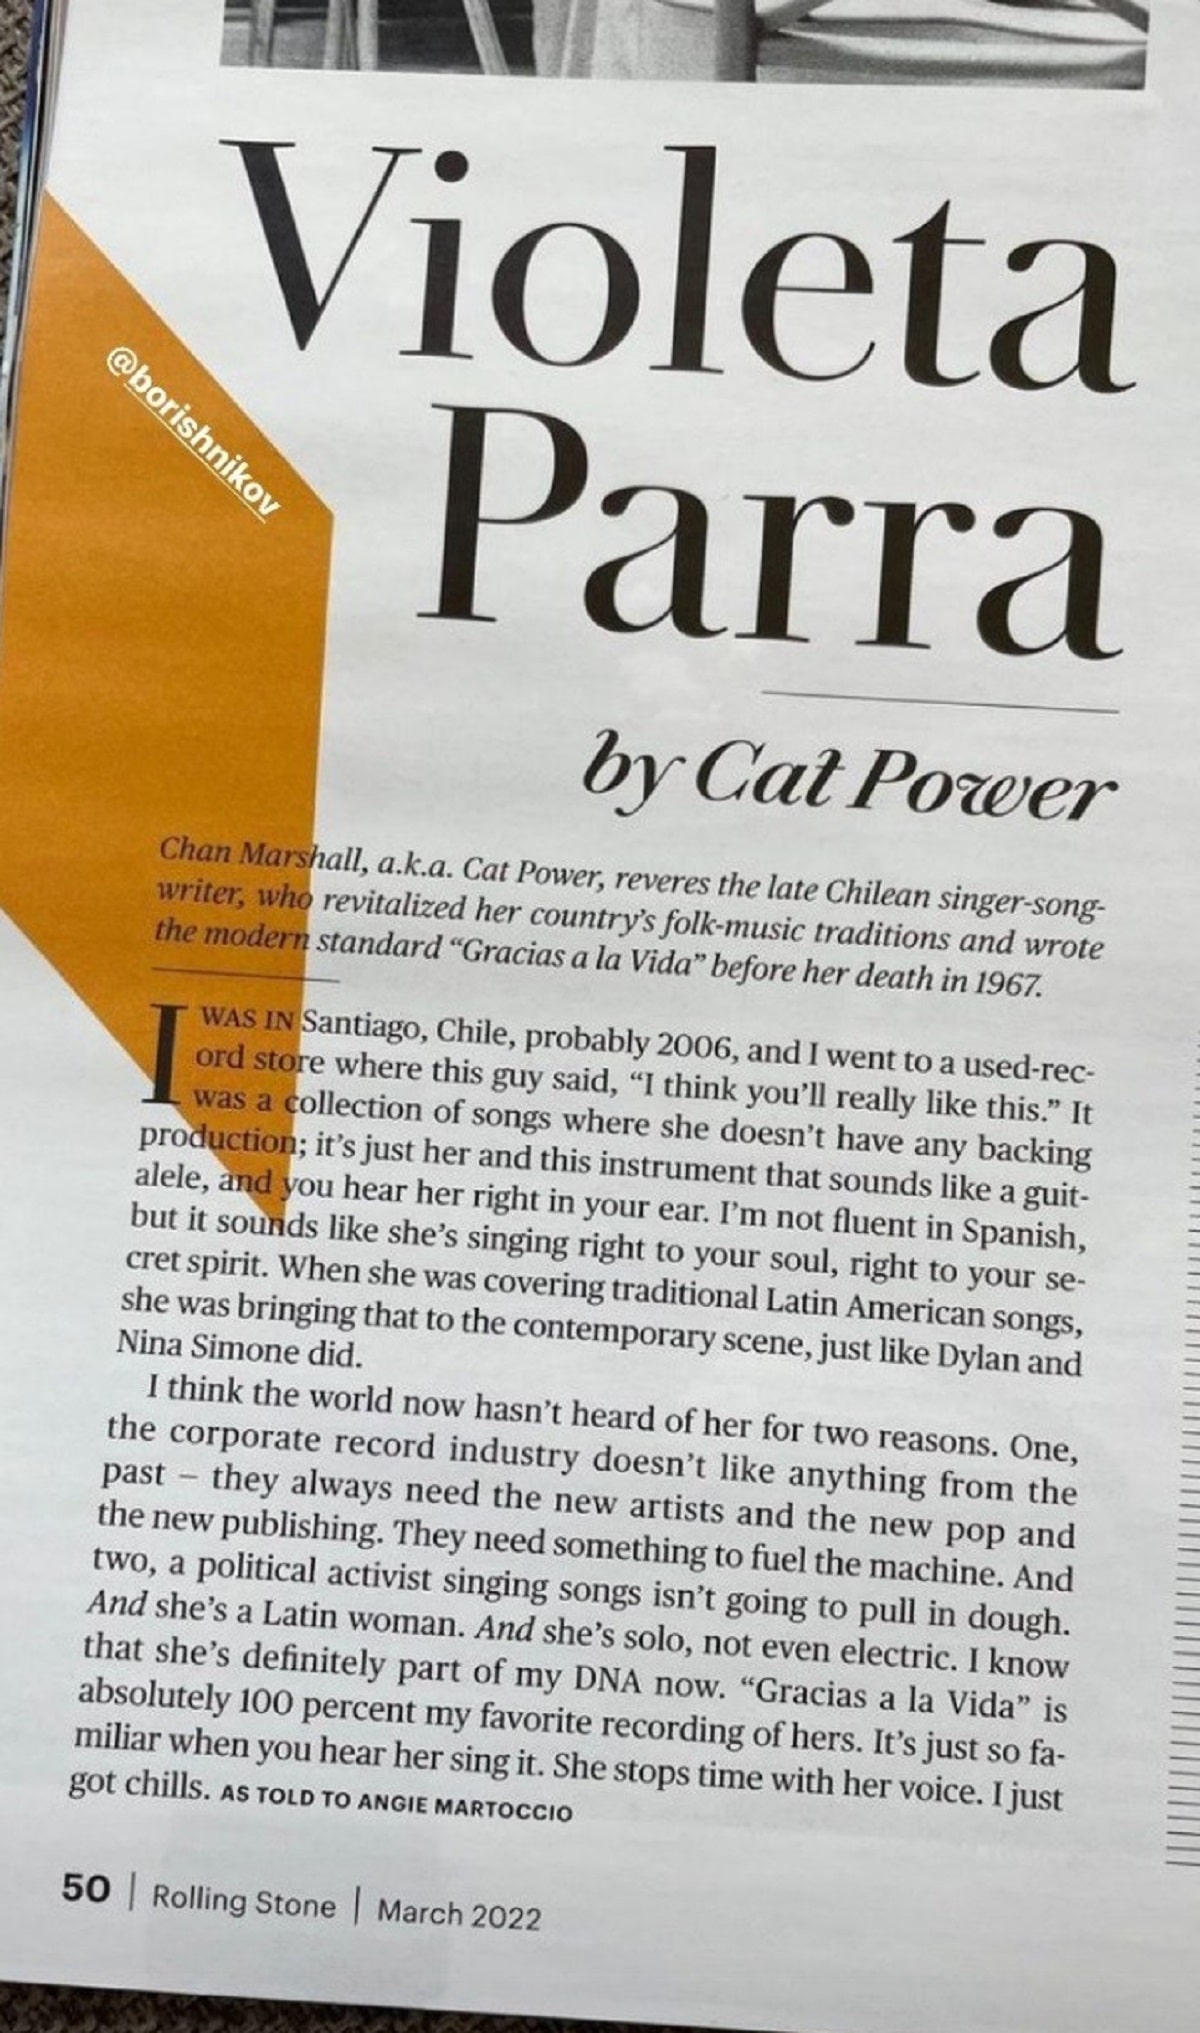 Fragmento de la nota de Cat Power sobre Violeta Parra.